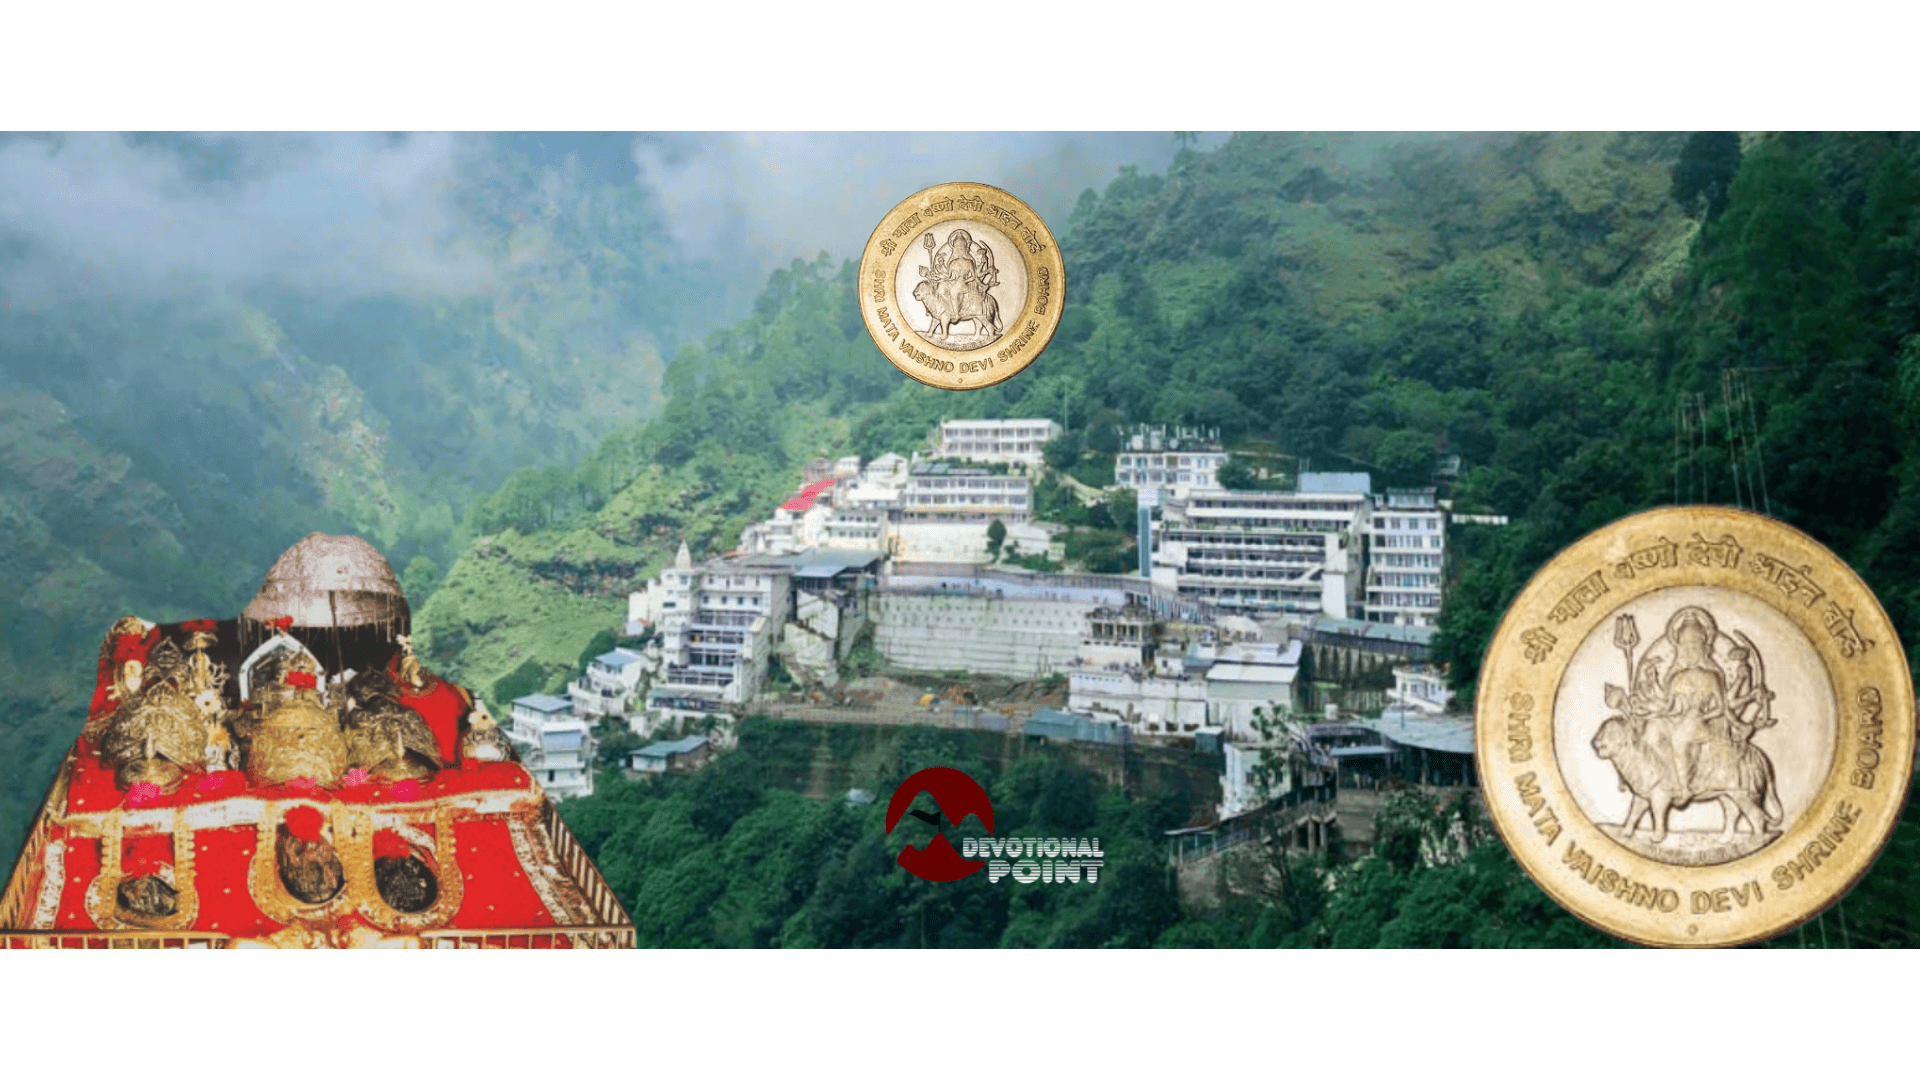 Shri Mata Vaishno devi ji coi